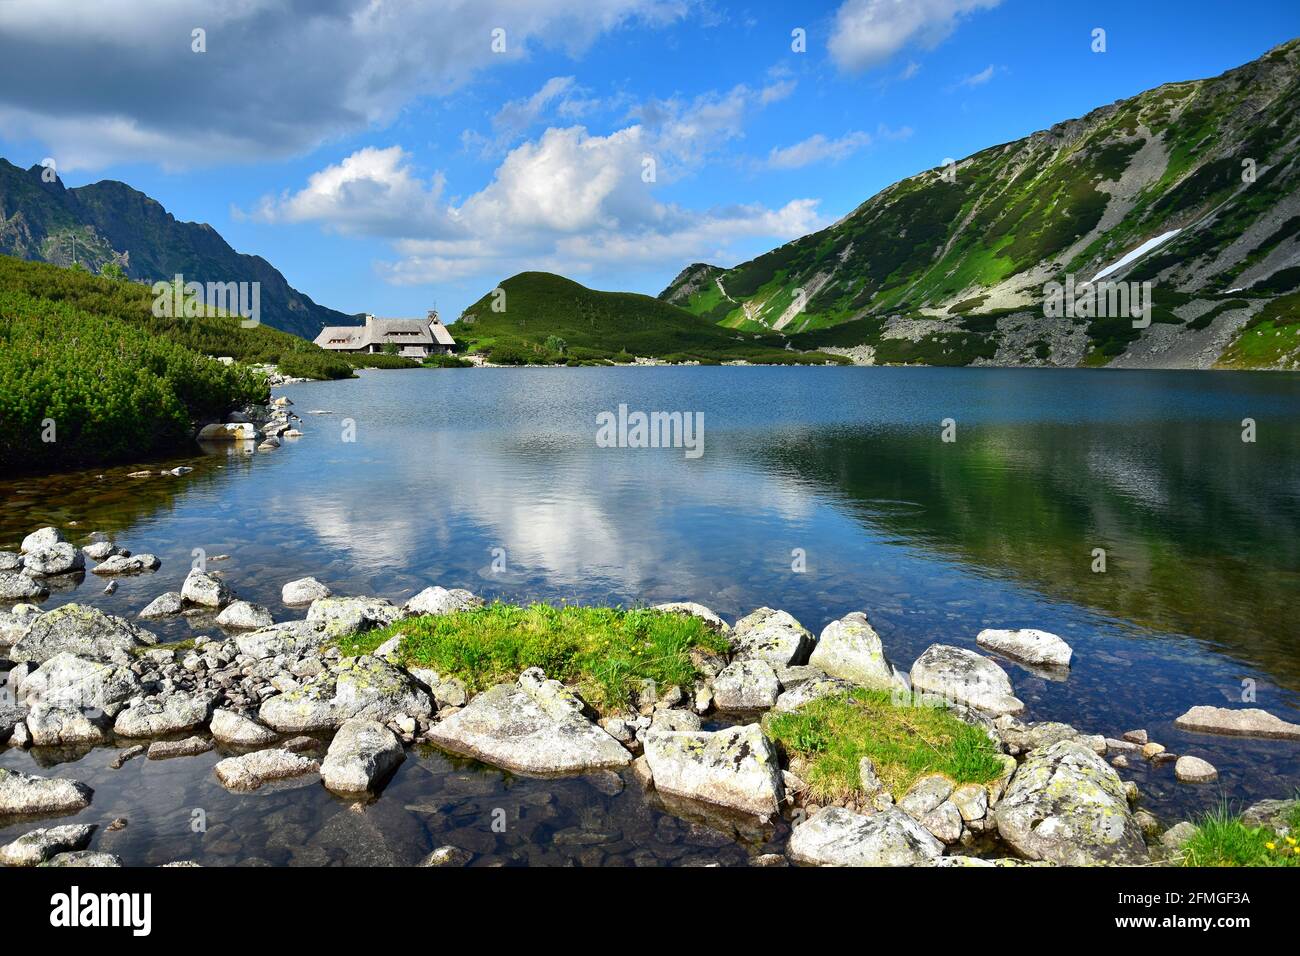 The beautiful lake Przedni Staw and the mountain lodge Schronisko Piec Stawow in the High Tatras, Poland. Stock Photo